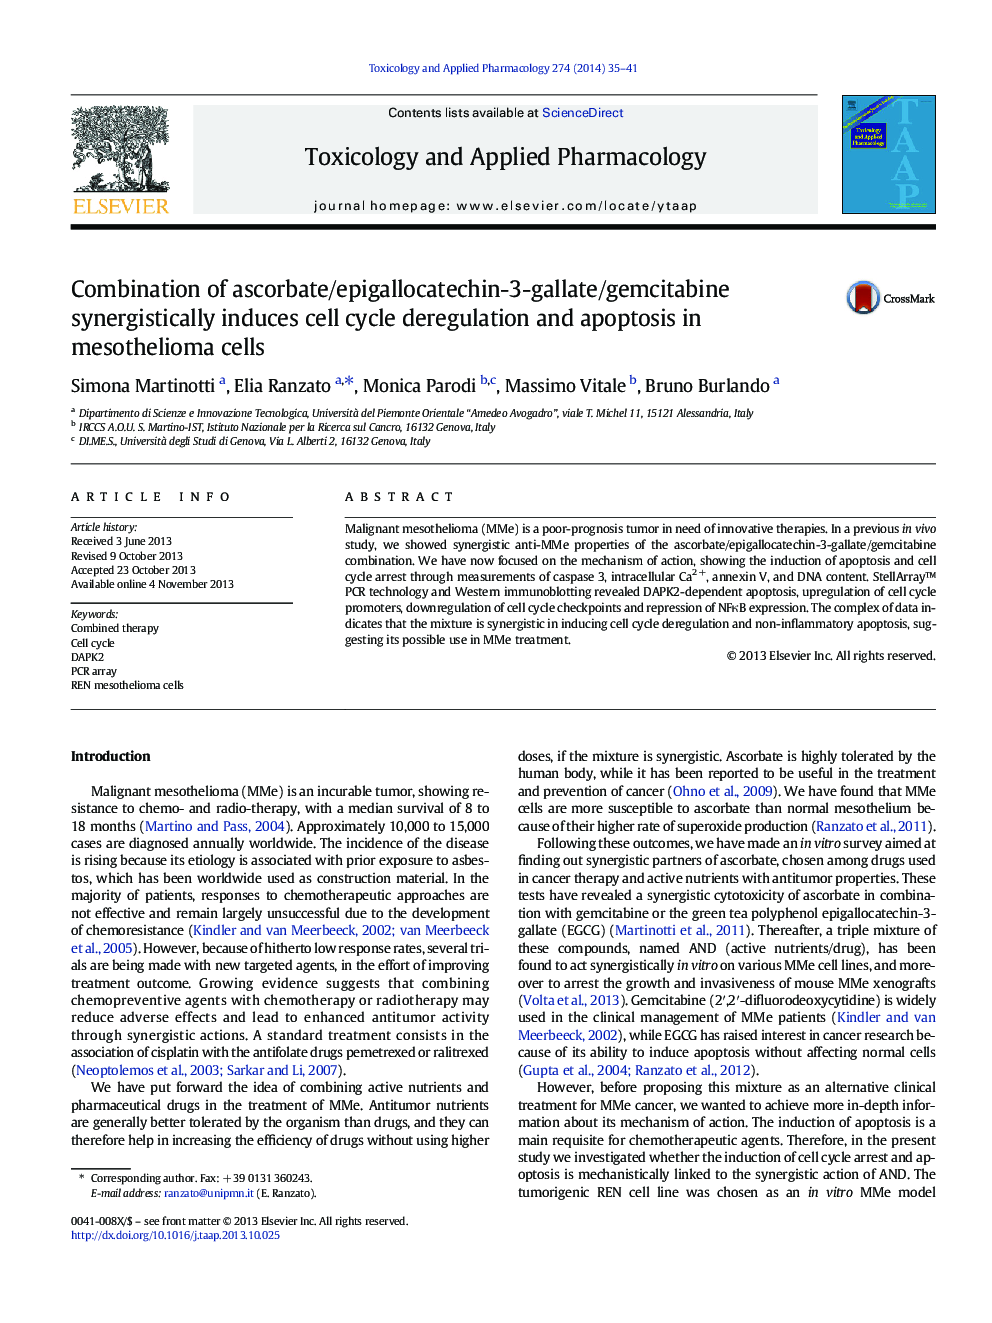 ترکیبی از آسکوربات / اپیکالاکاتچین 3-گالات / گامسیتآبین با همکاری باعث کاهش سلول های سلولی و آپوپتوز در سلول های مزوتلیوما می شود 